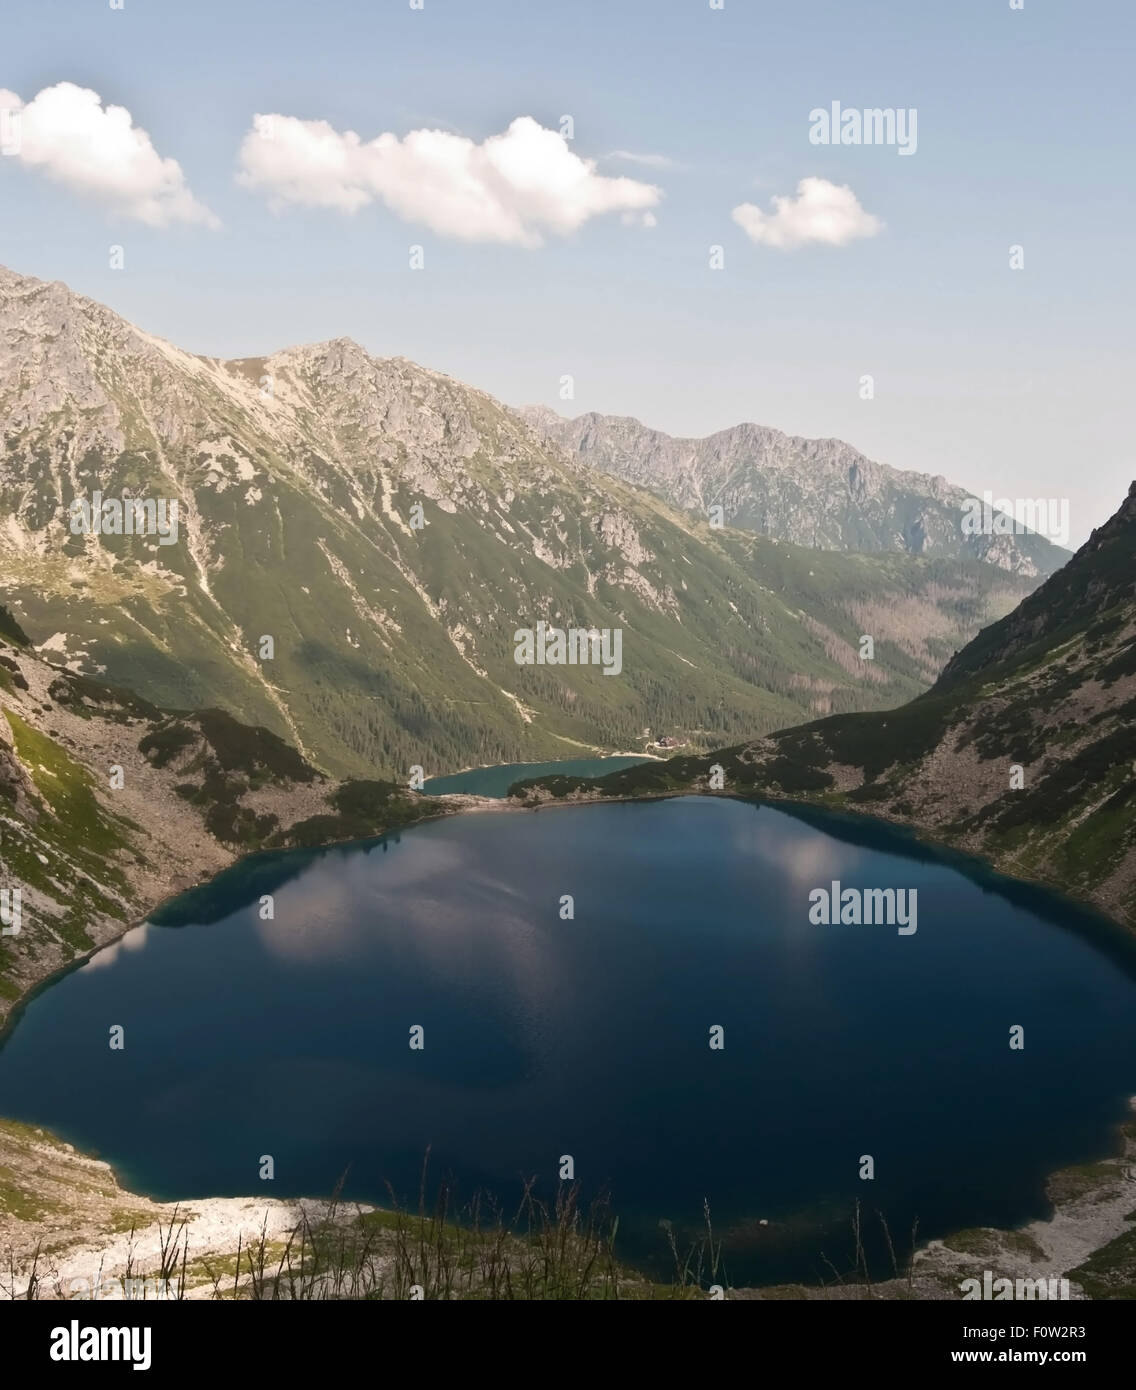 Vue de Czarny Staw Morskie Oko et lacs de montagnes Tatry au cours de randonnées à pic Rysy Banque D'Images